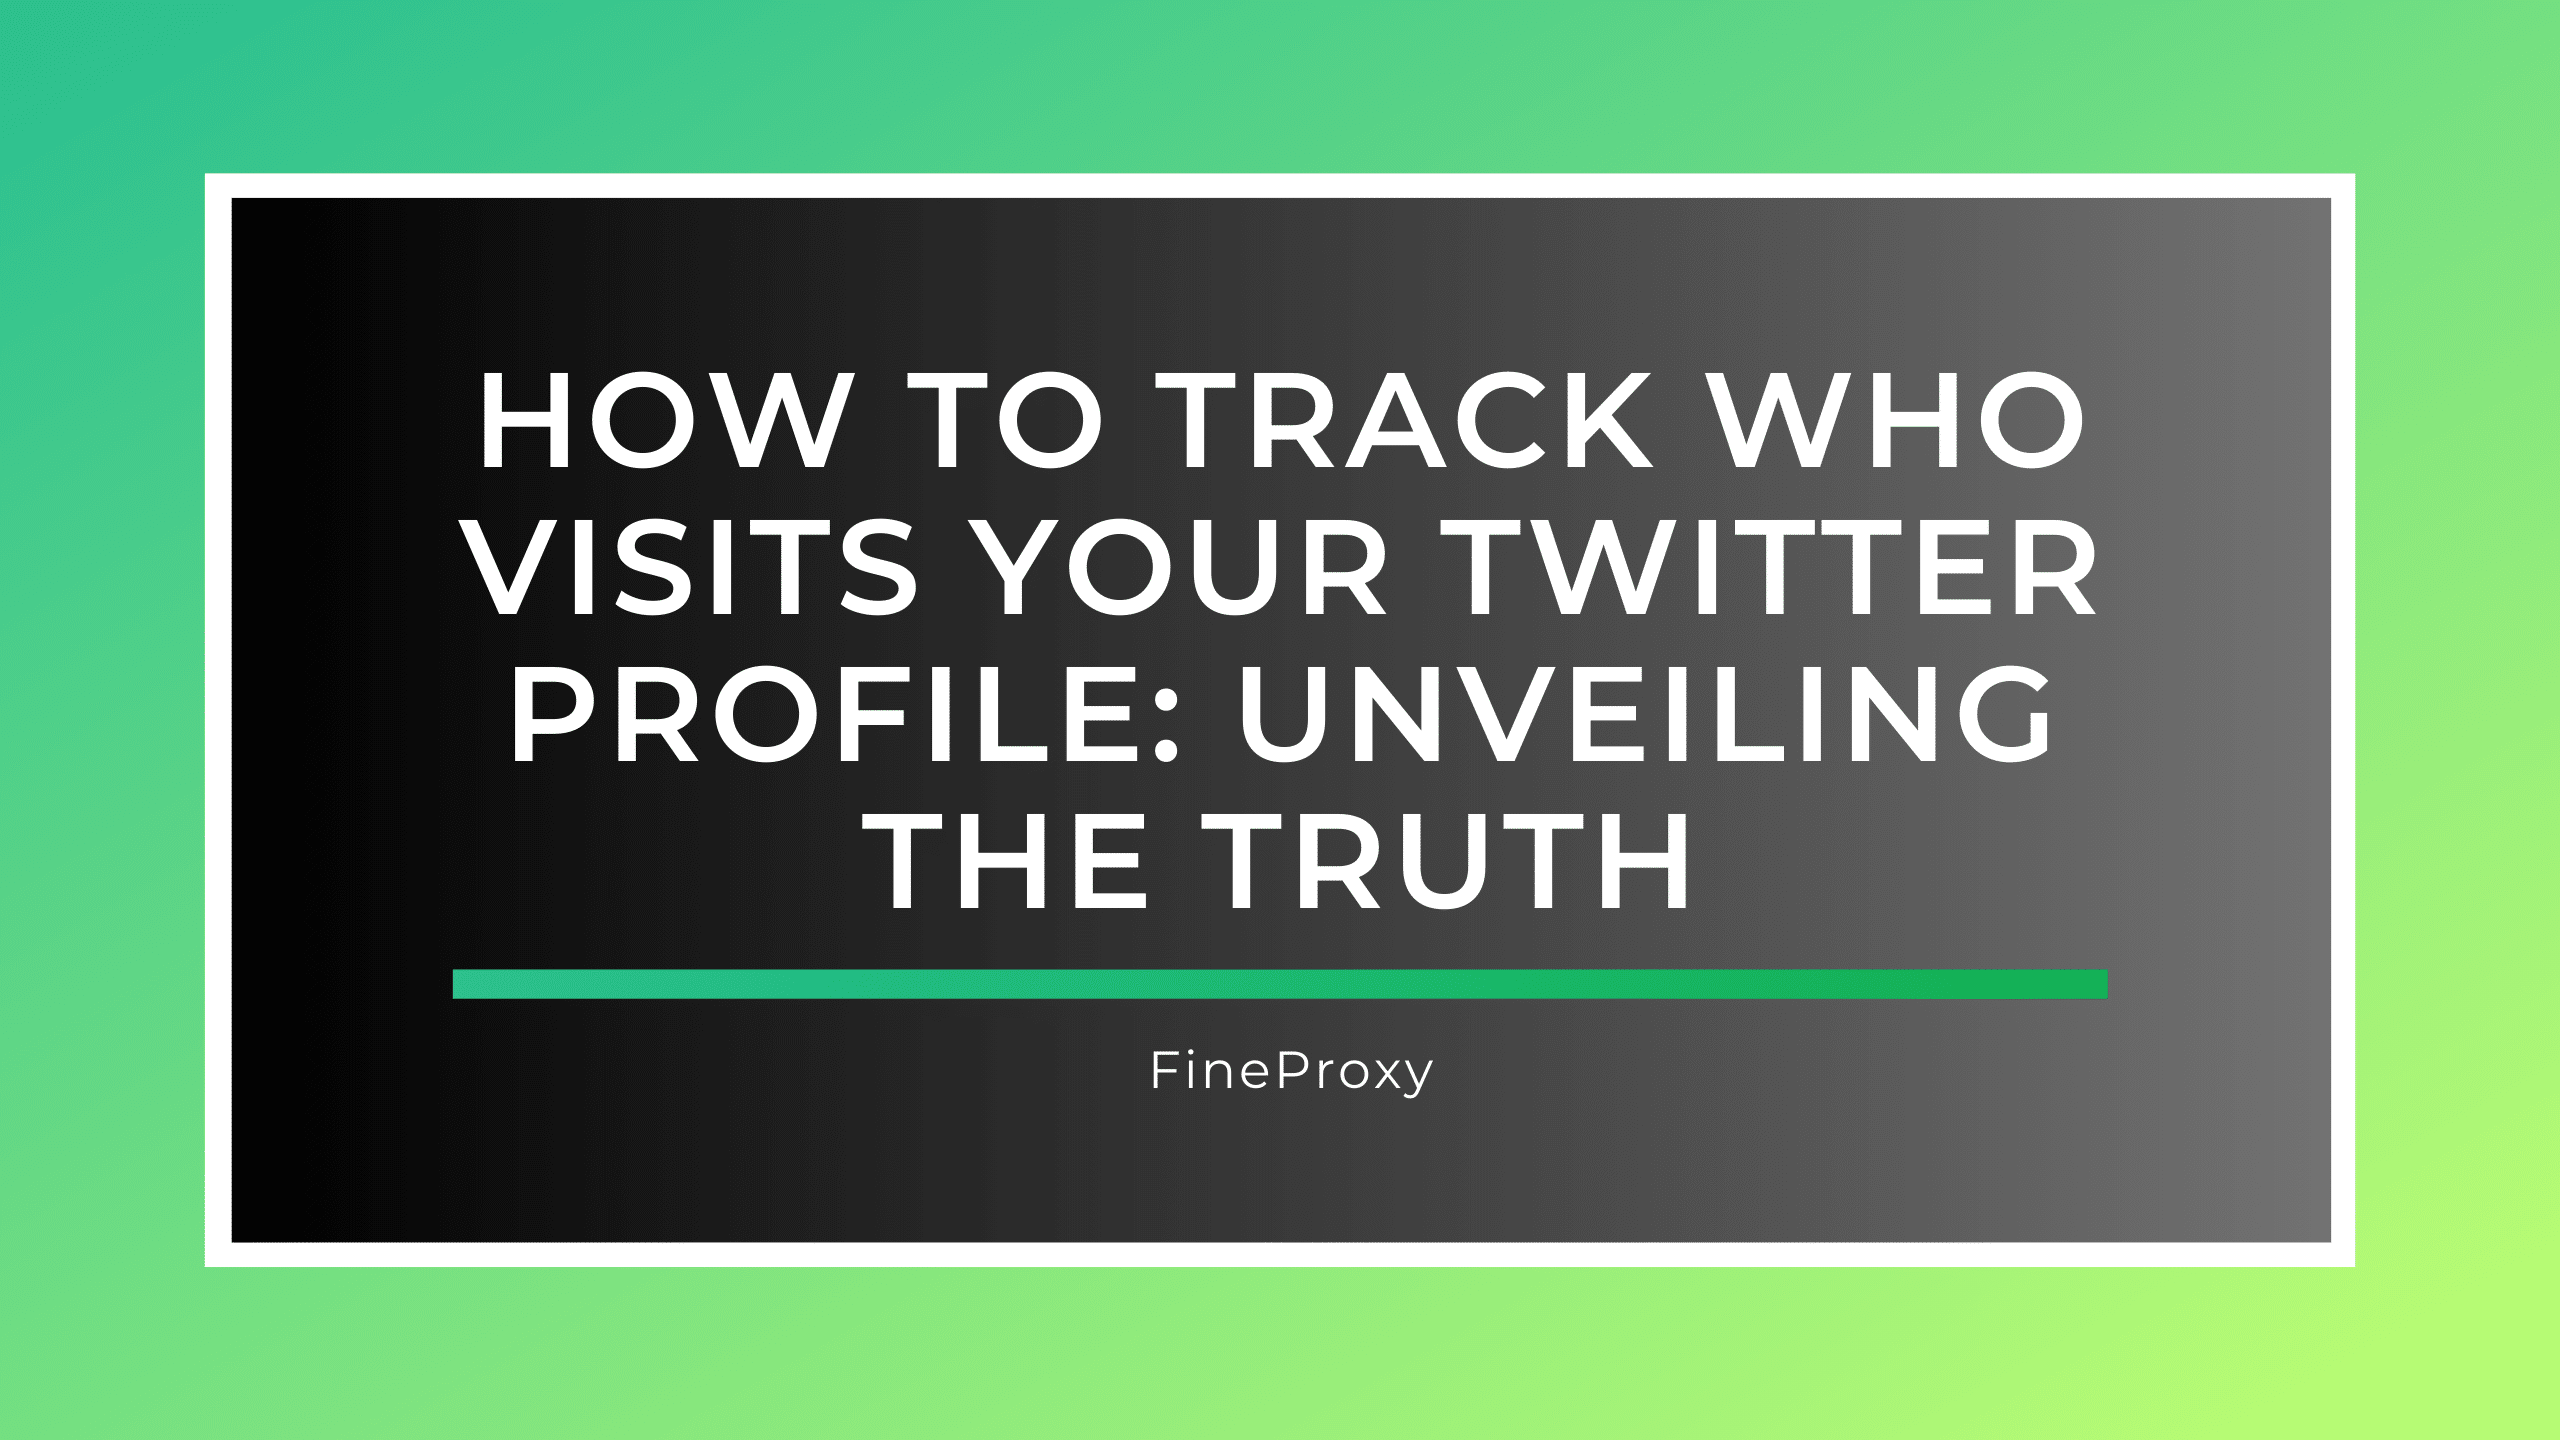 कैसे ट्रैक करें कि आपकी ट्विटर प्रोफ़ाइल पर कौन जाता है: सच्चाई का खुलासा